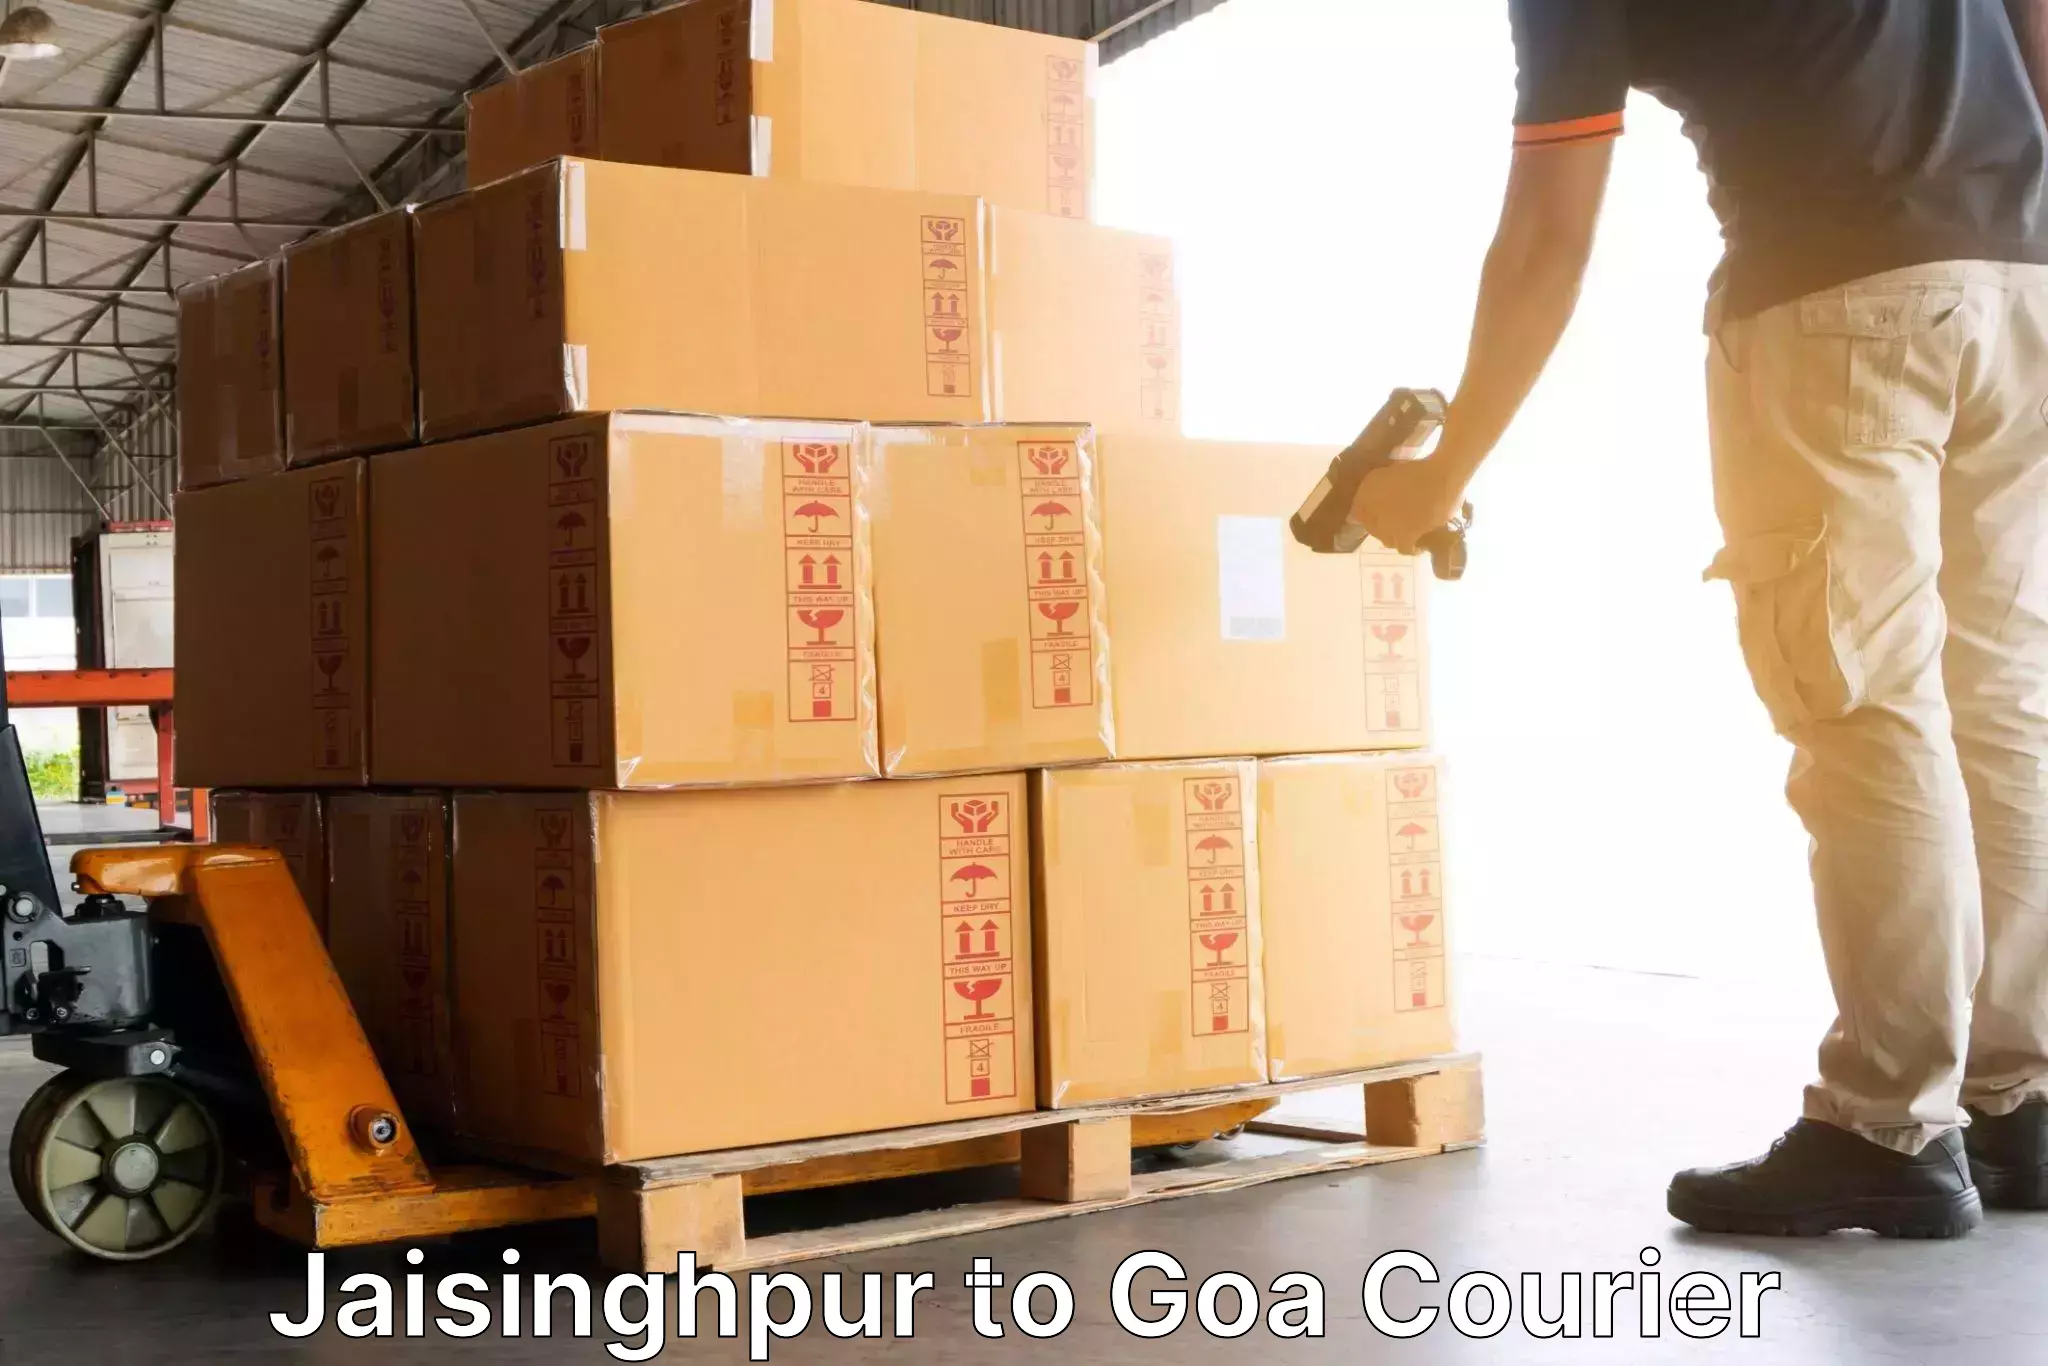 International courier rates Jaisinghpur to Panaji